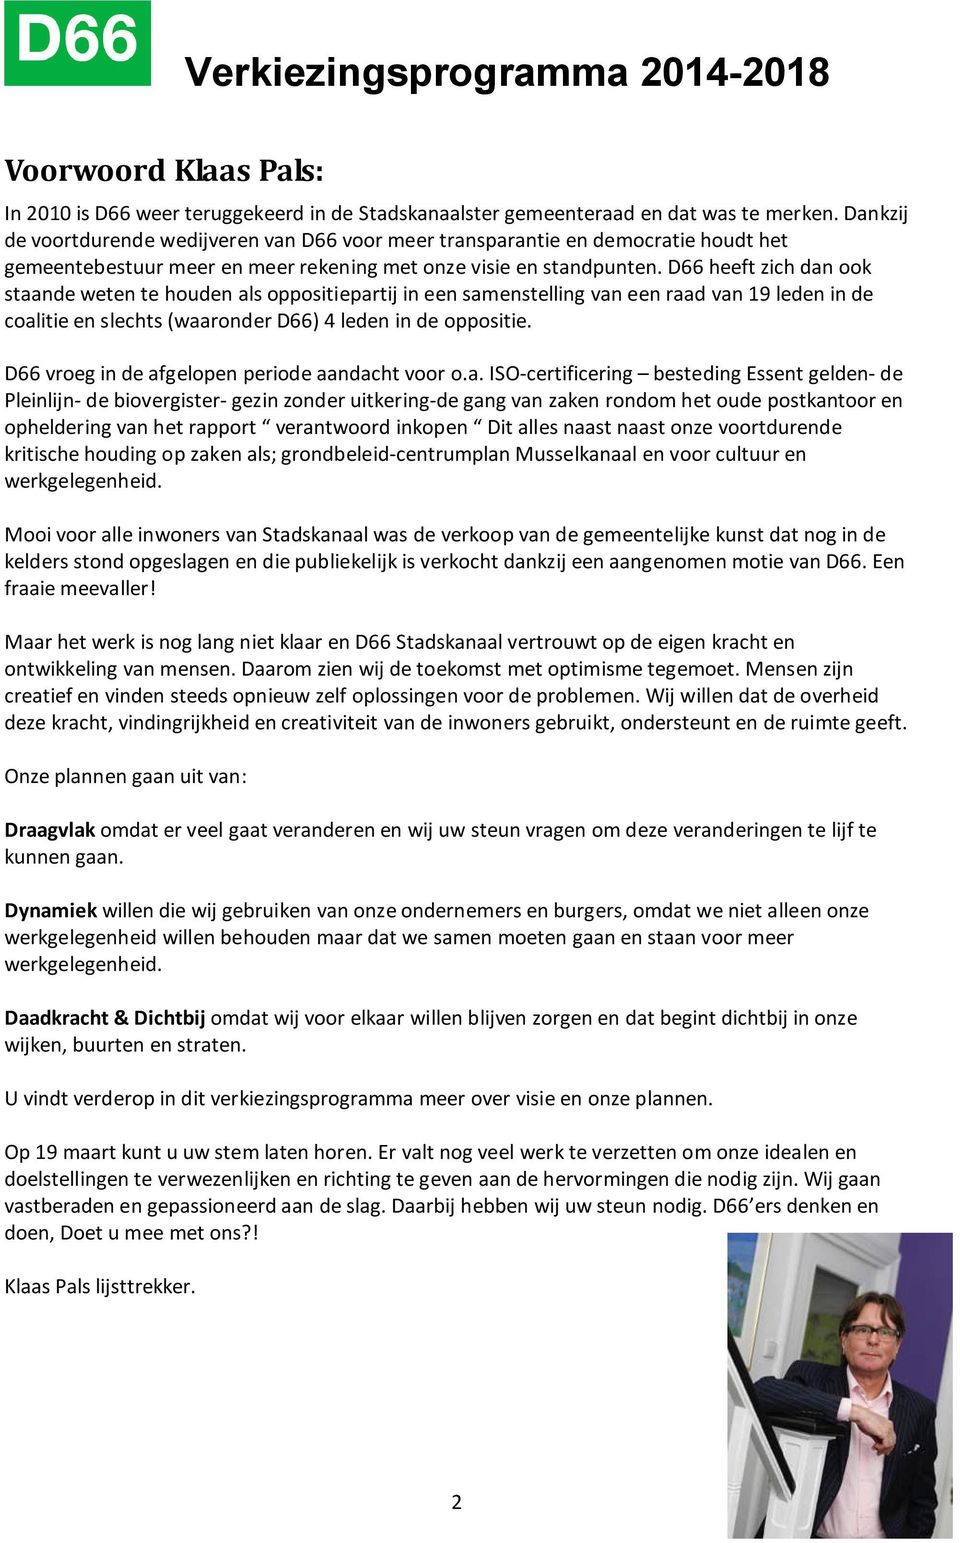 D66 heeft zich dan ook staande weten te houden als oppositiepartij in een samenstelling van een raad van 19 leden in de coalitie en slechts (waaronder D66) 4 leden in de oppositie.